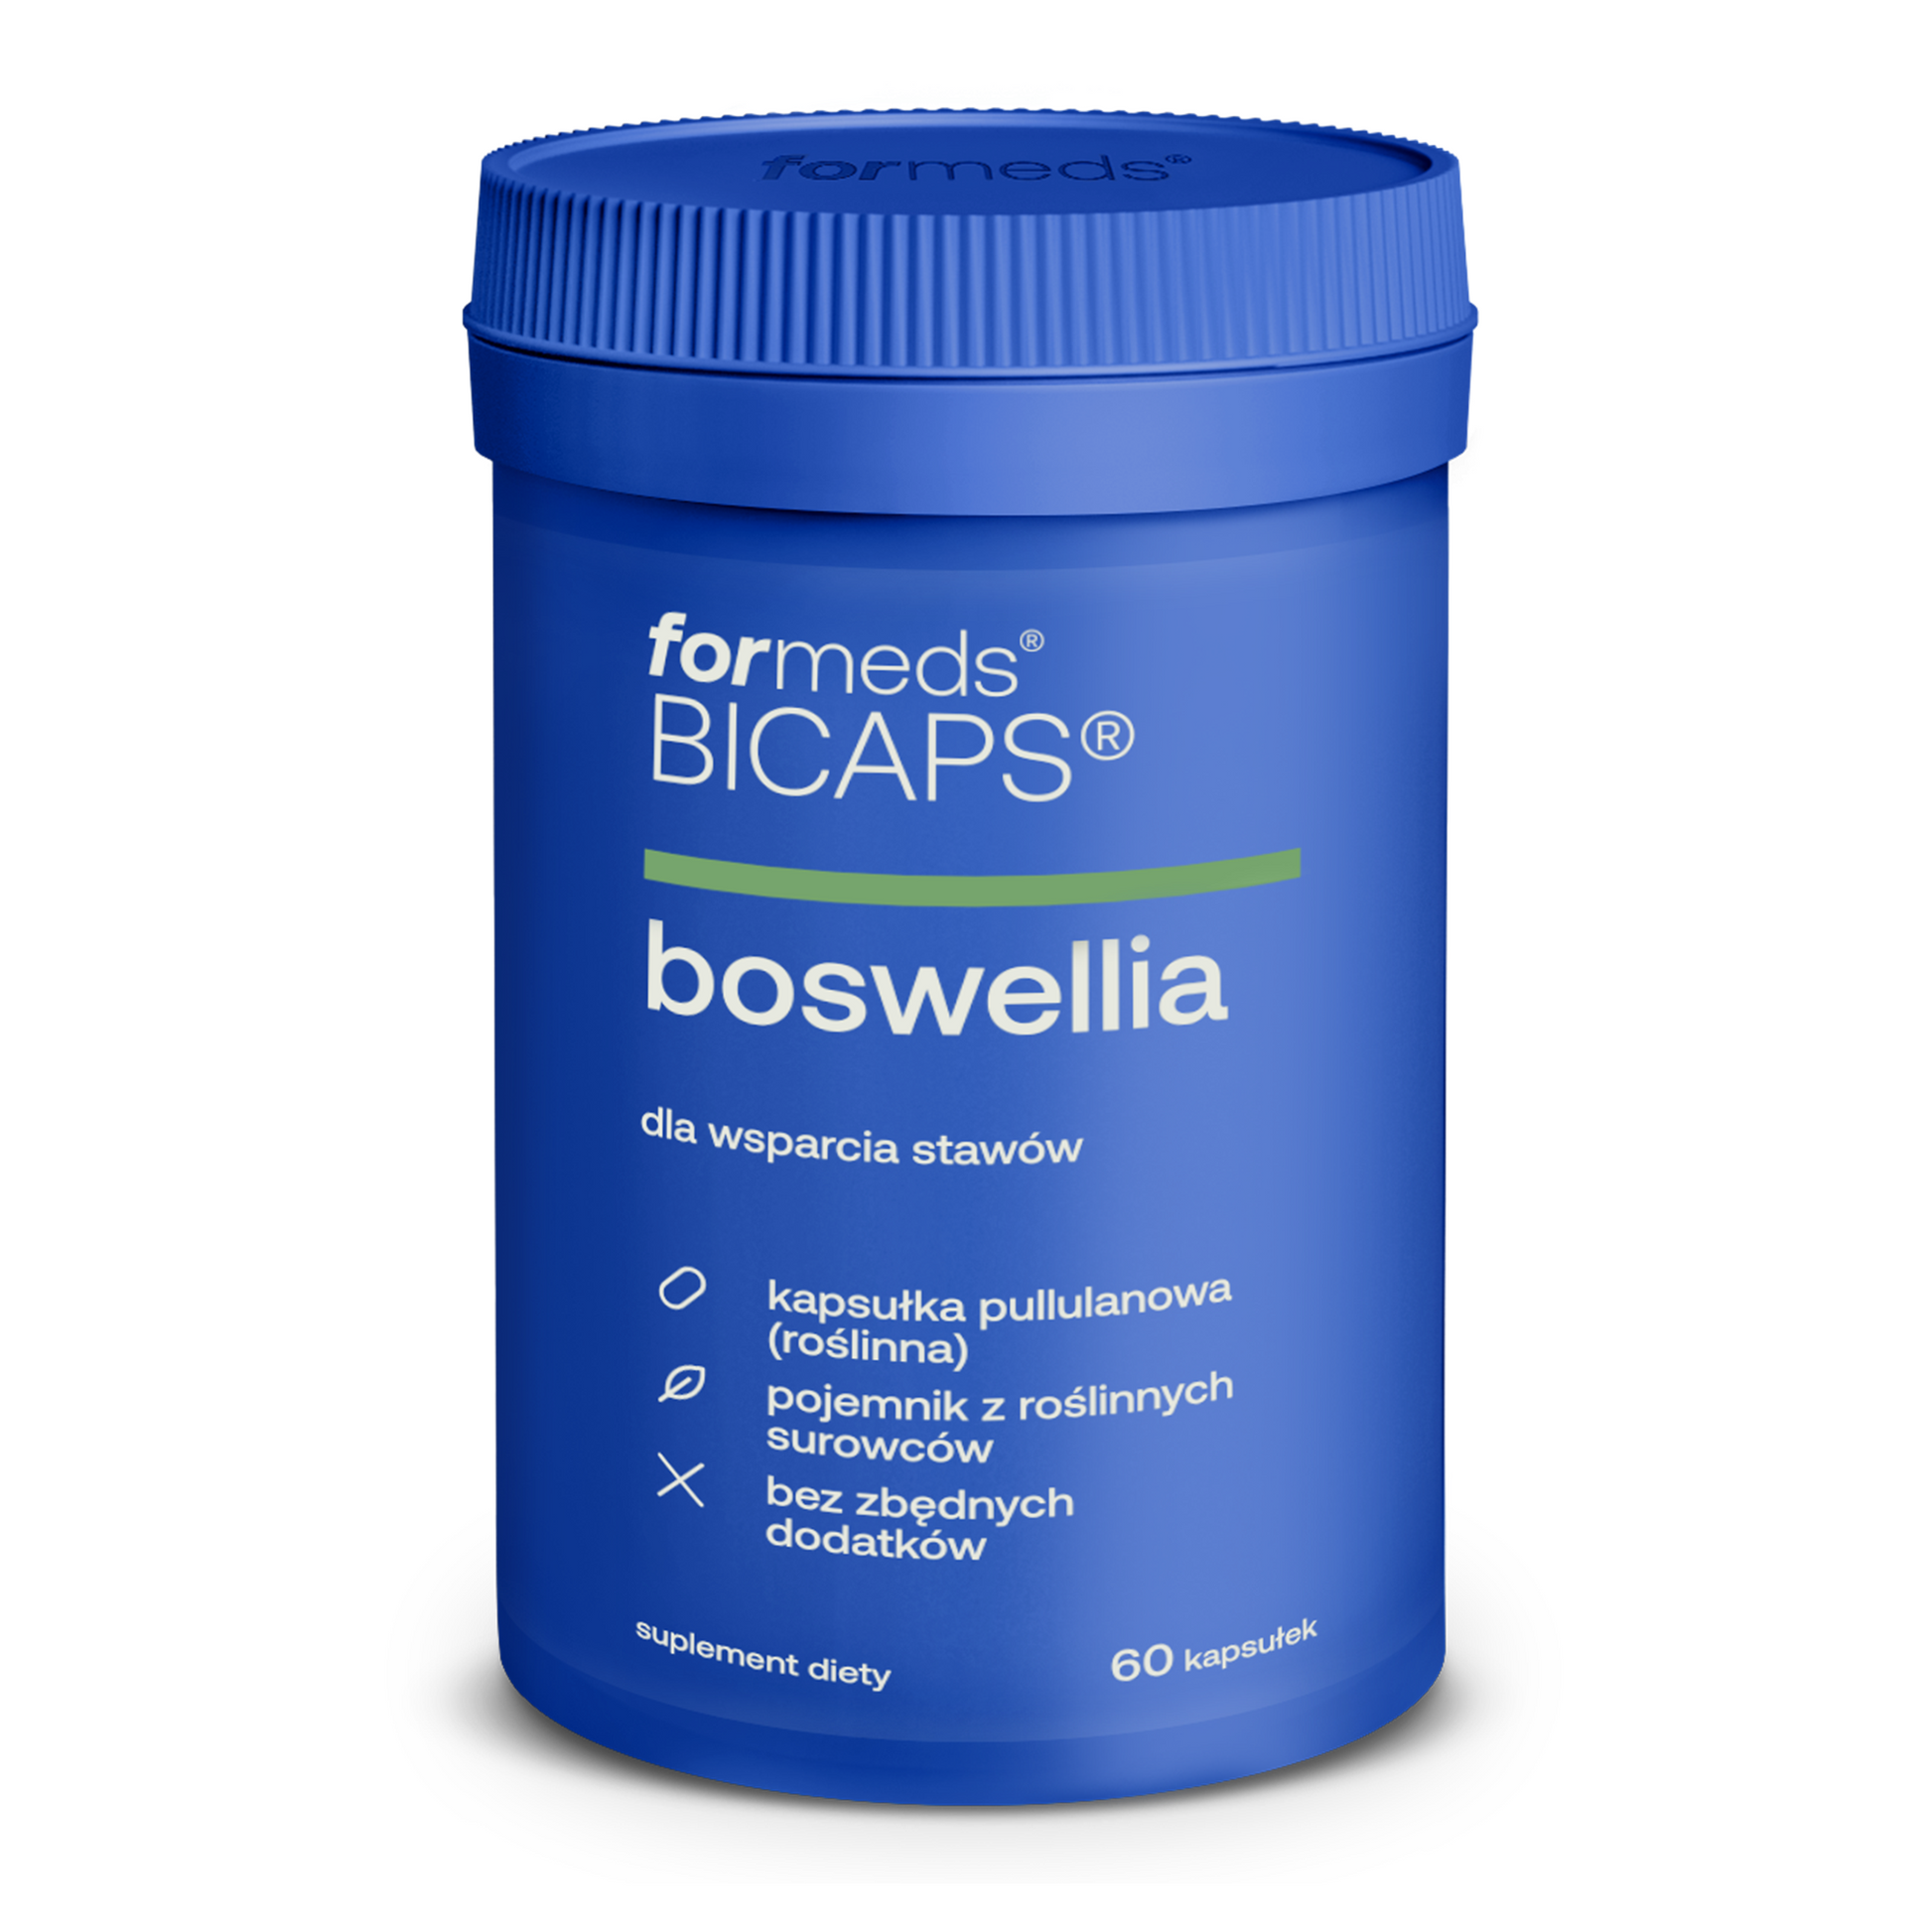 BICAPS Boswellia - kwas bosweliowy, boswellia serrata na stawy tabletki, kapsułki